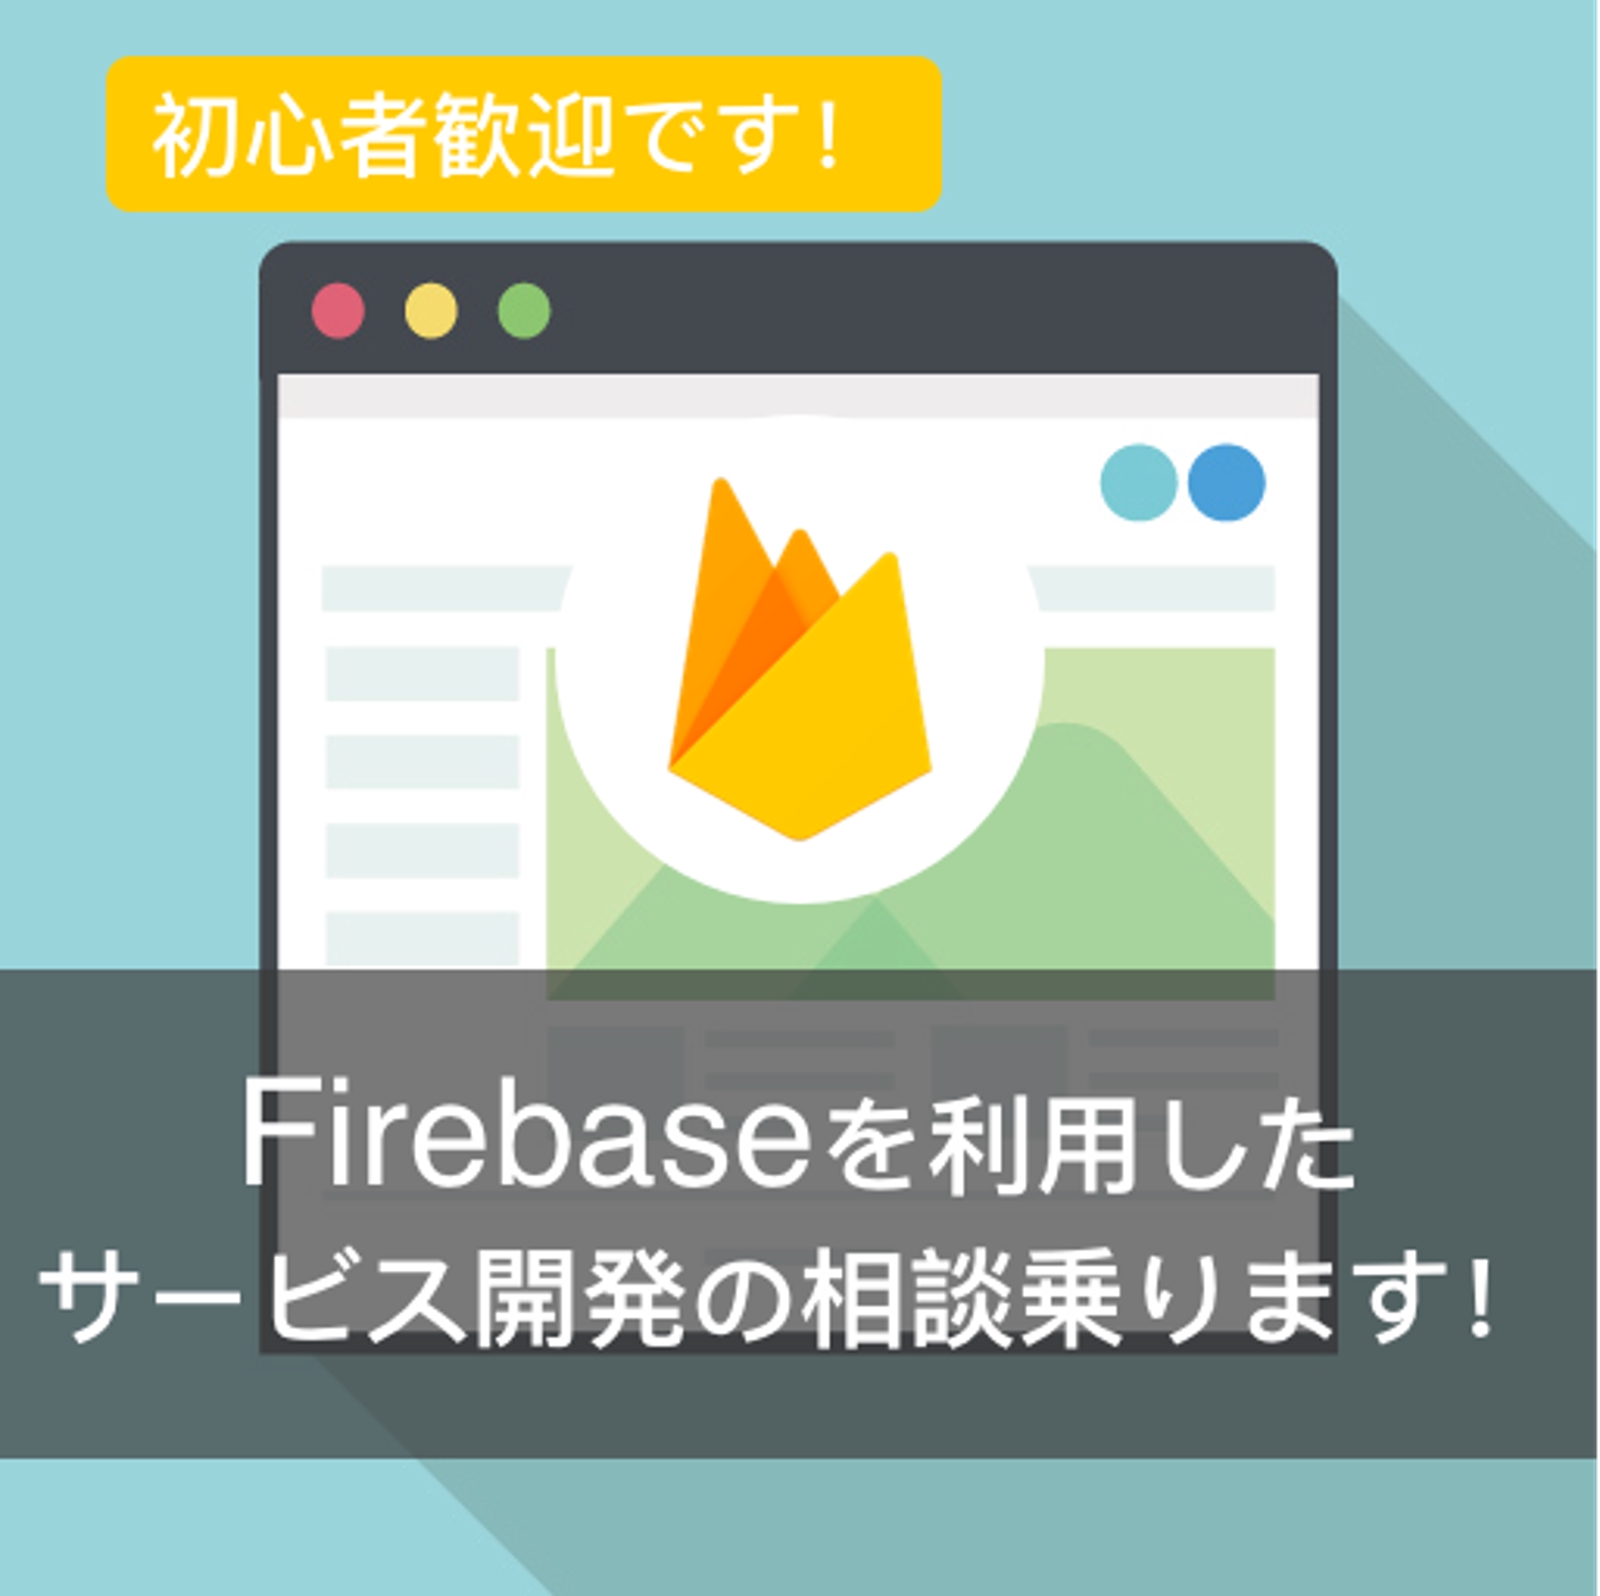 【現在新規の相談をお受けできません】：Firebaseを利用したサービスづくりの相談のります-image1